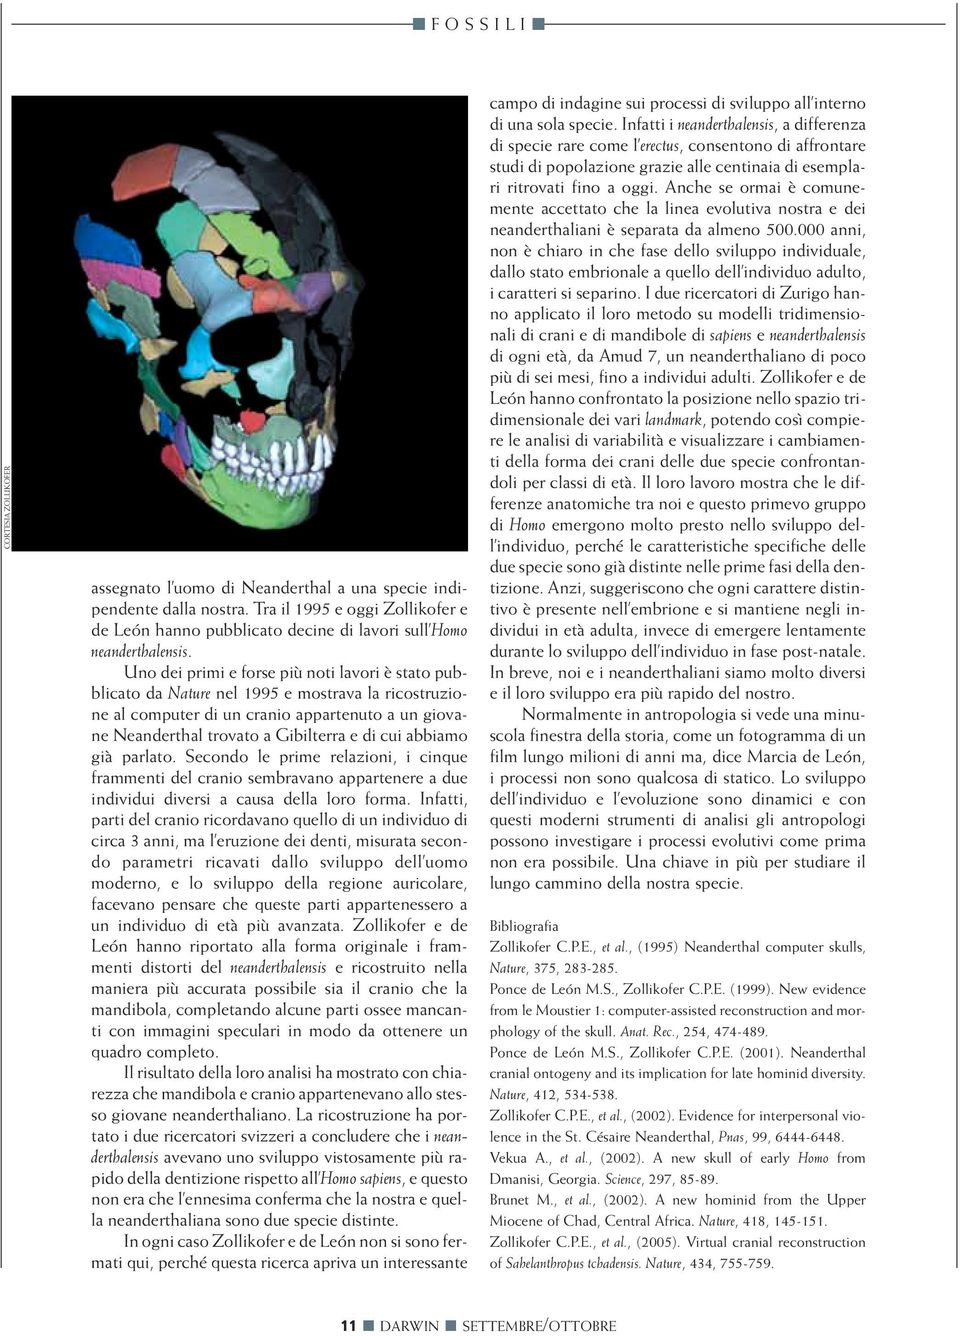 abbiamo già parlato. Secondo le prime relazioni, i cinque frammenti del cranio sembravano appartenere a due individui diversi a causa della loro forma.